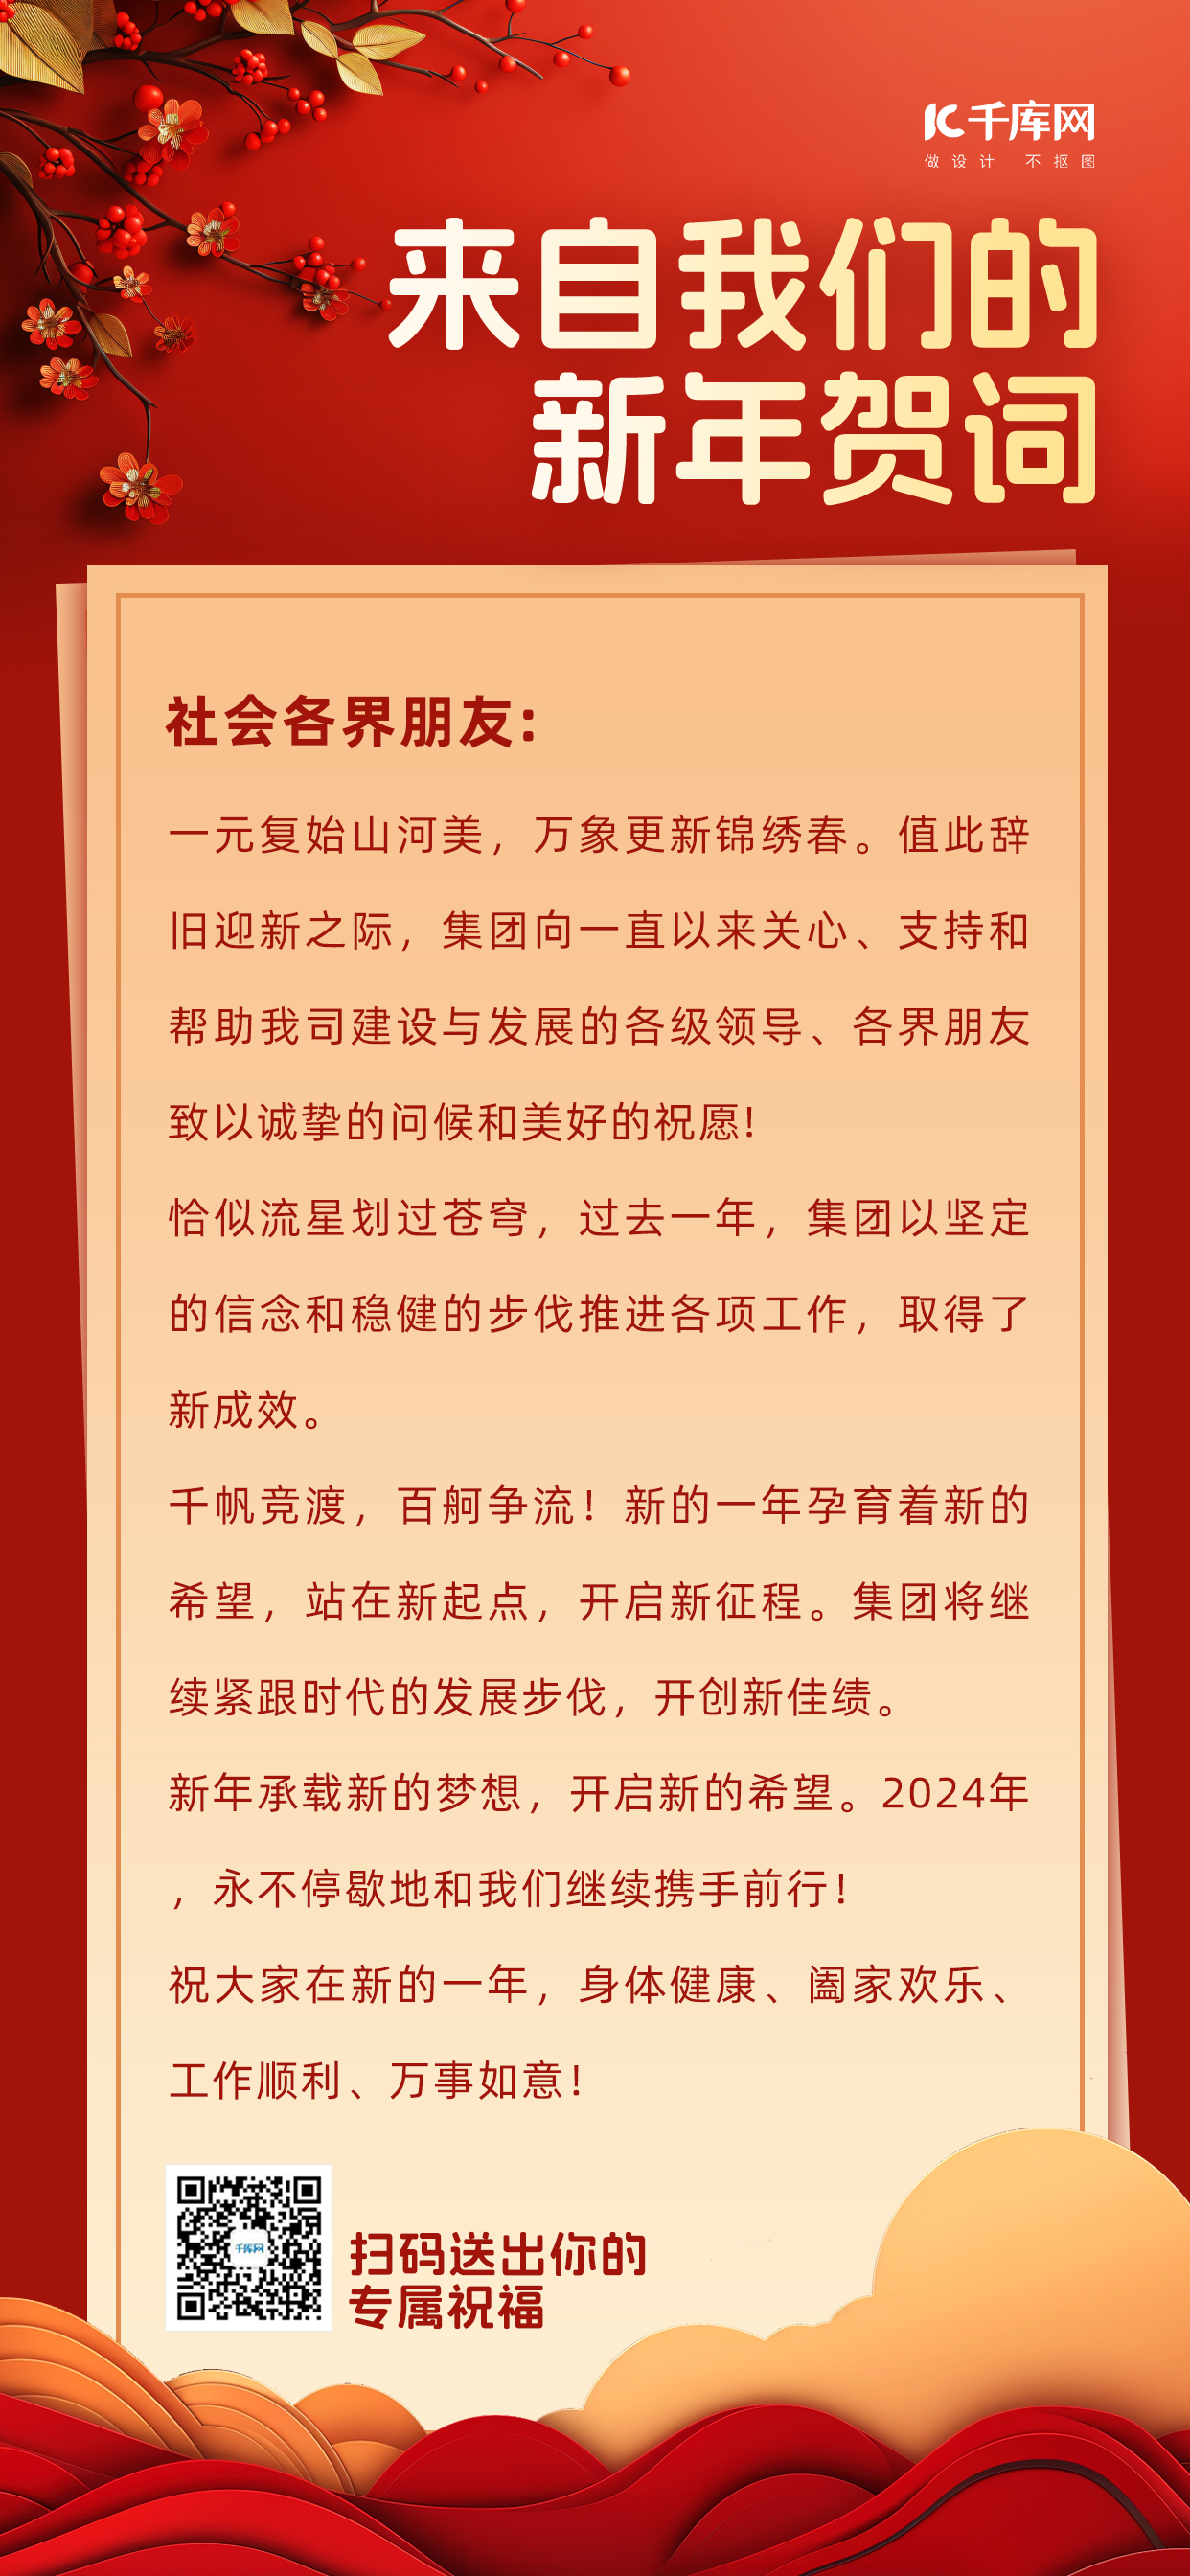 新春贺词花红色中国风广告宣传手机海报图片